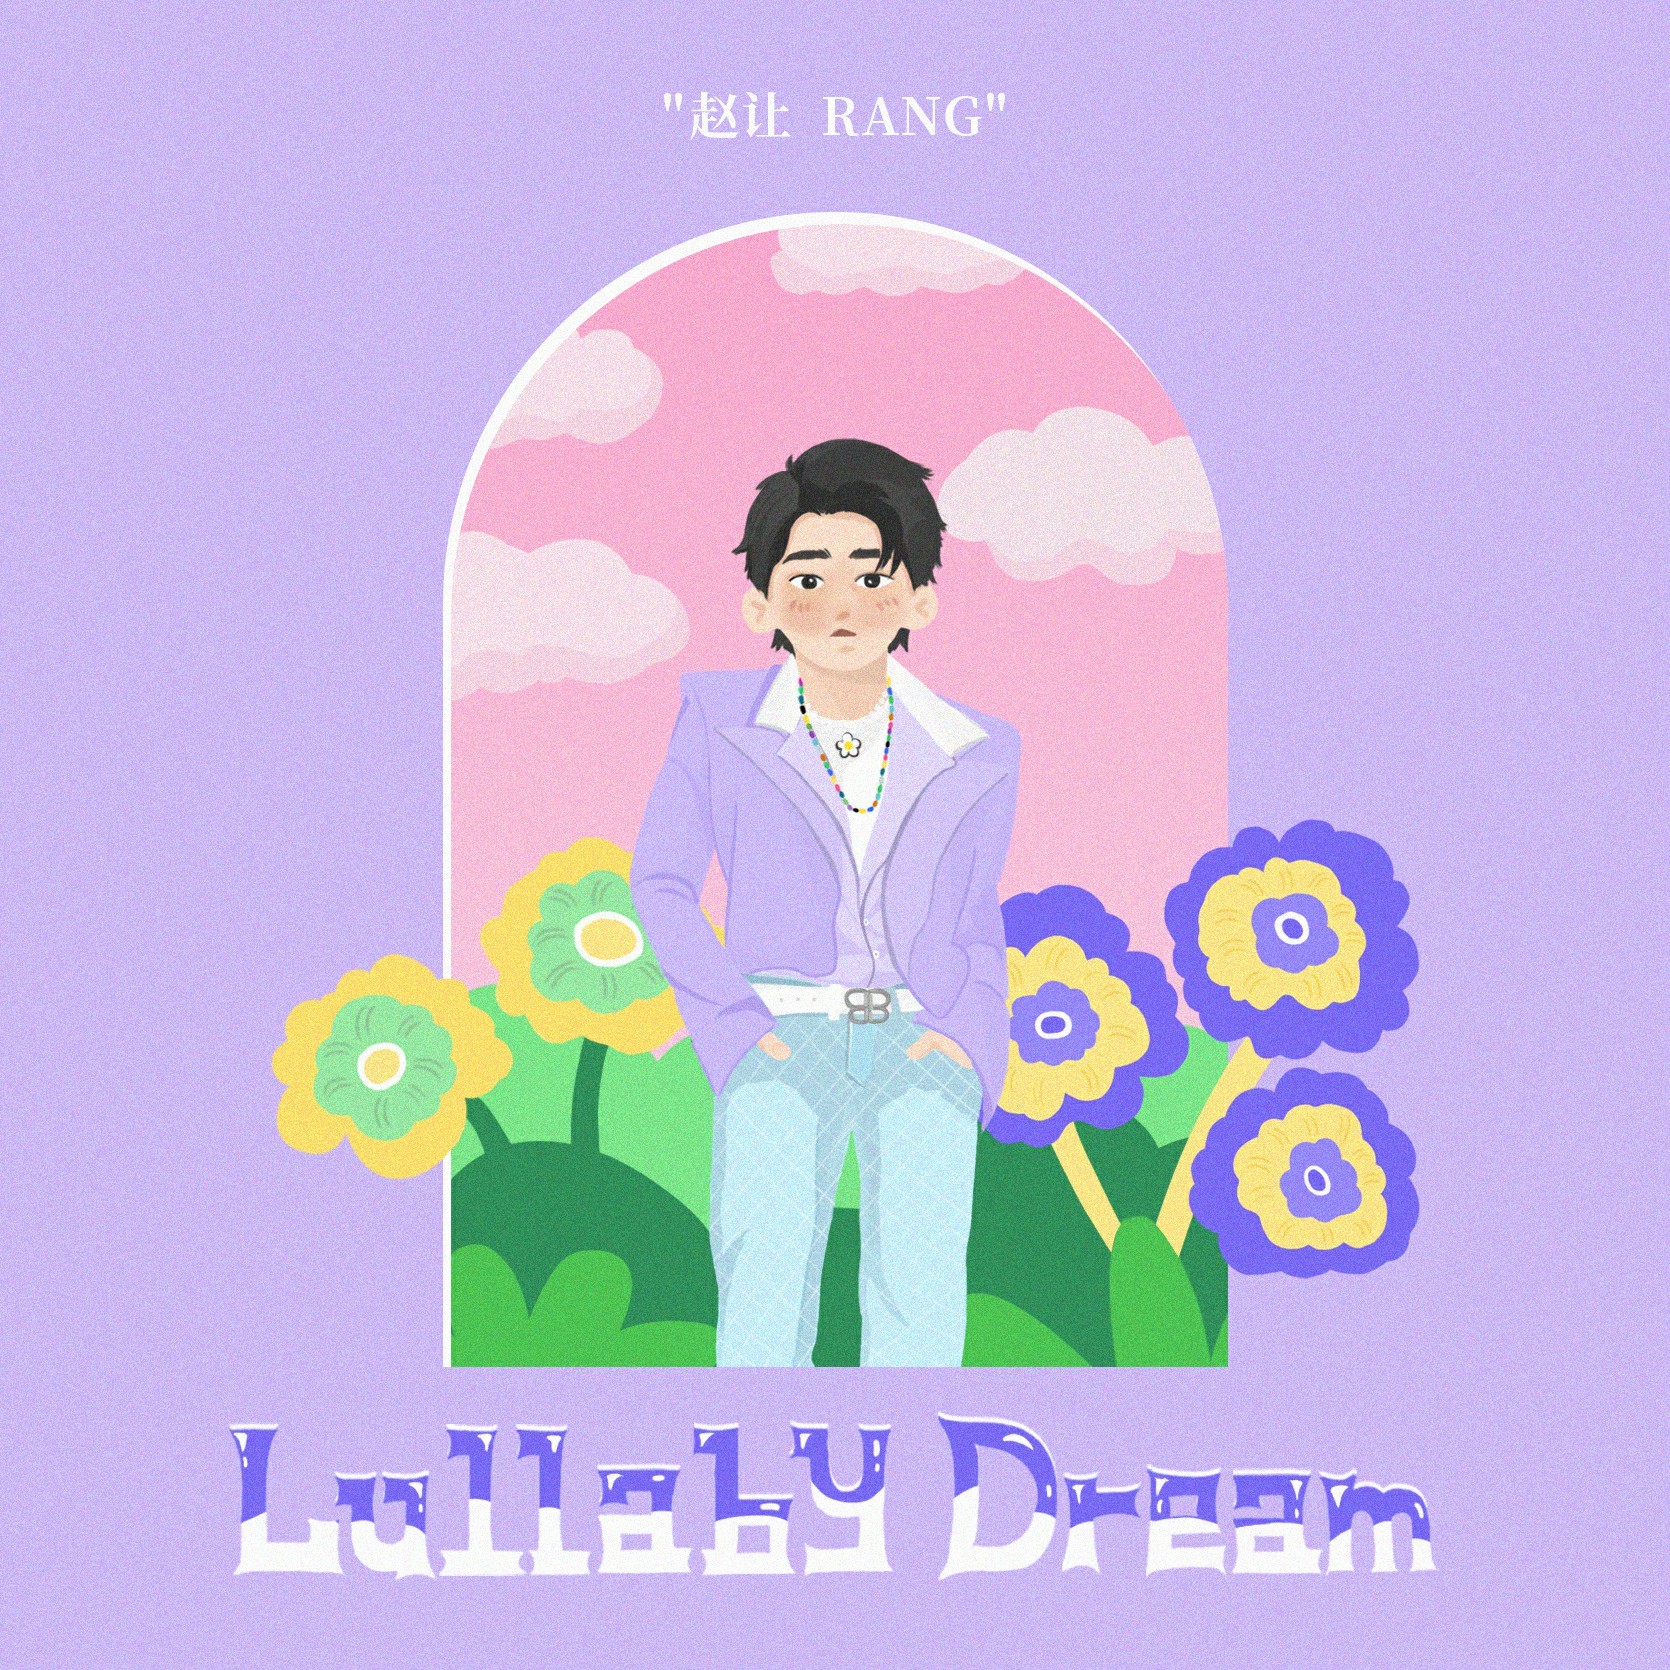 赵让首次自作词曲新歌《Lullaby Dream》今日上线